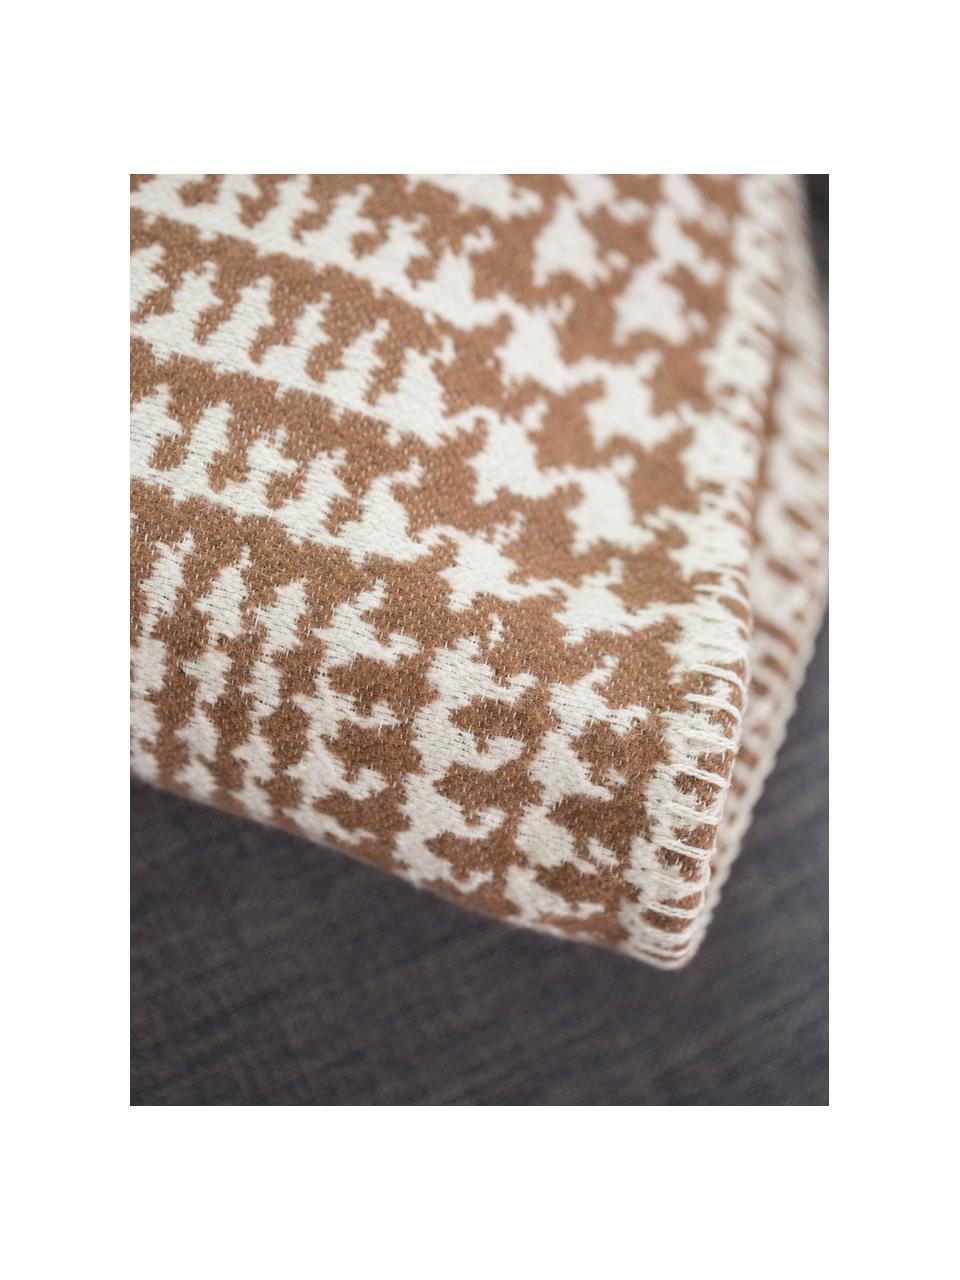 Plaid Glencheck mit Hahnentritt Muster, Bezug: 85% Baumwolle, 8% Viskose, Braun, Weiß, 145 x 220 cm